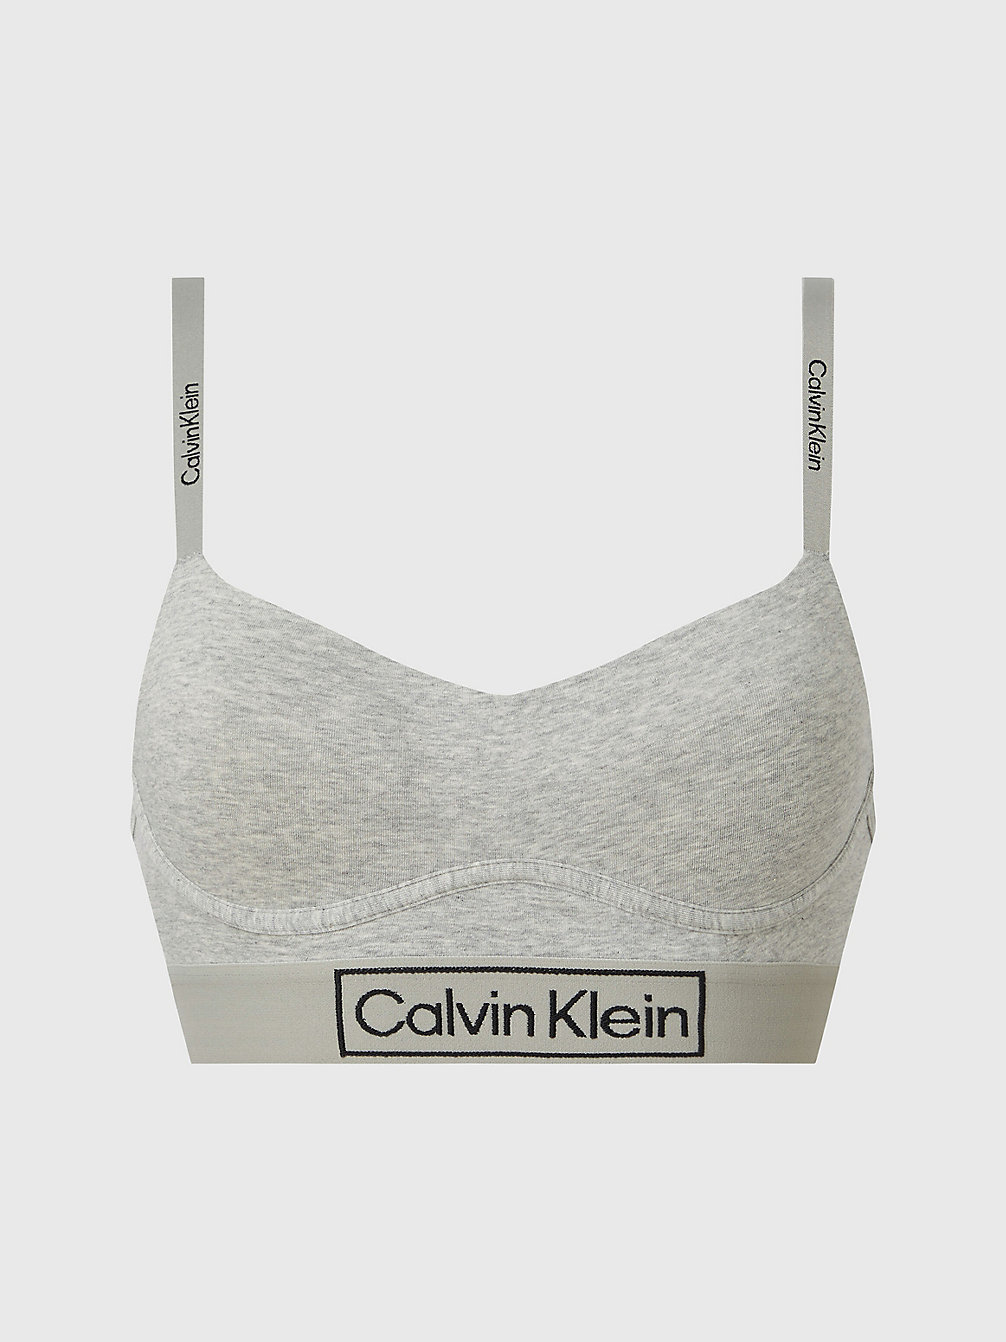 GREY HEATHER Bralette - Reimagined Heritage undefined Damen Calvin Klein